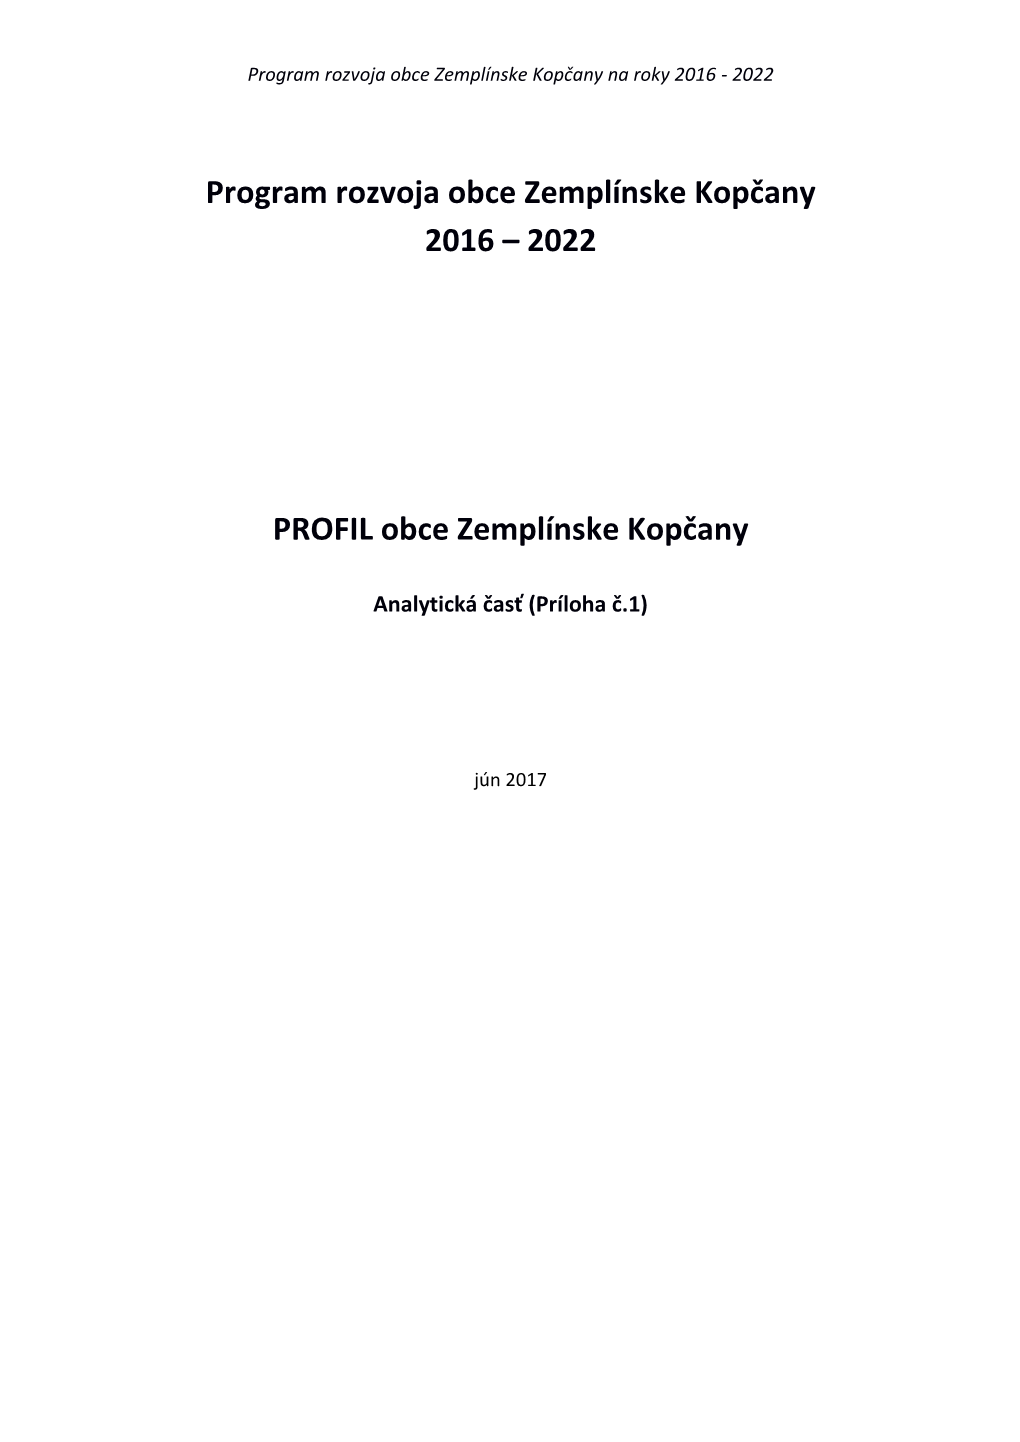 PRO Zemplínske Kopčany 2016-2022